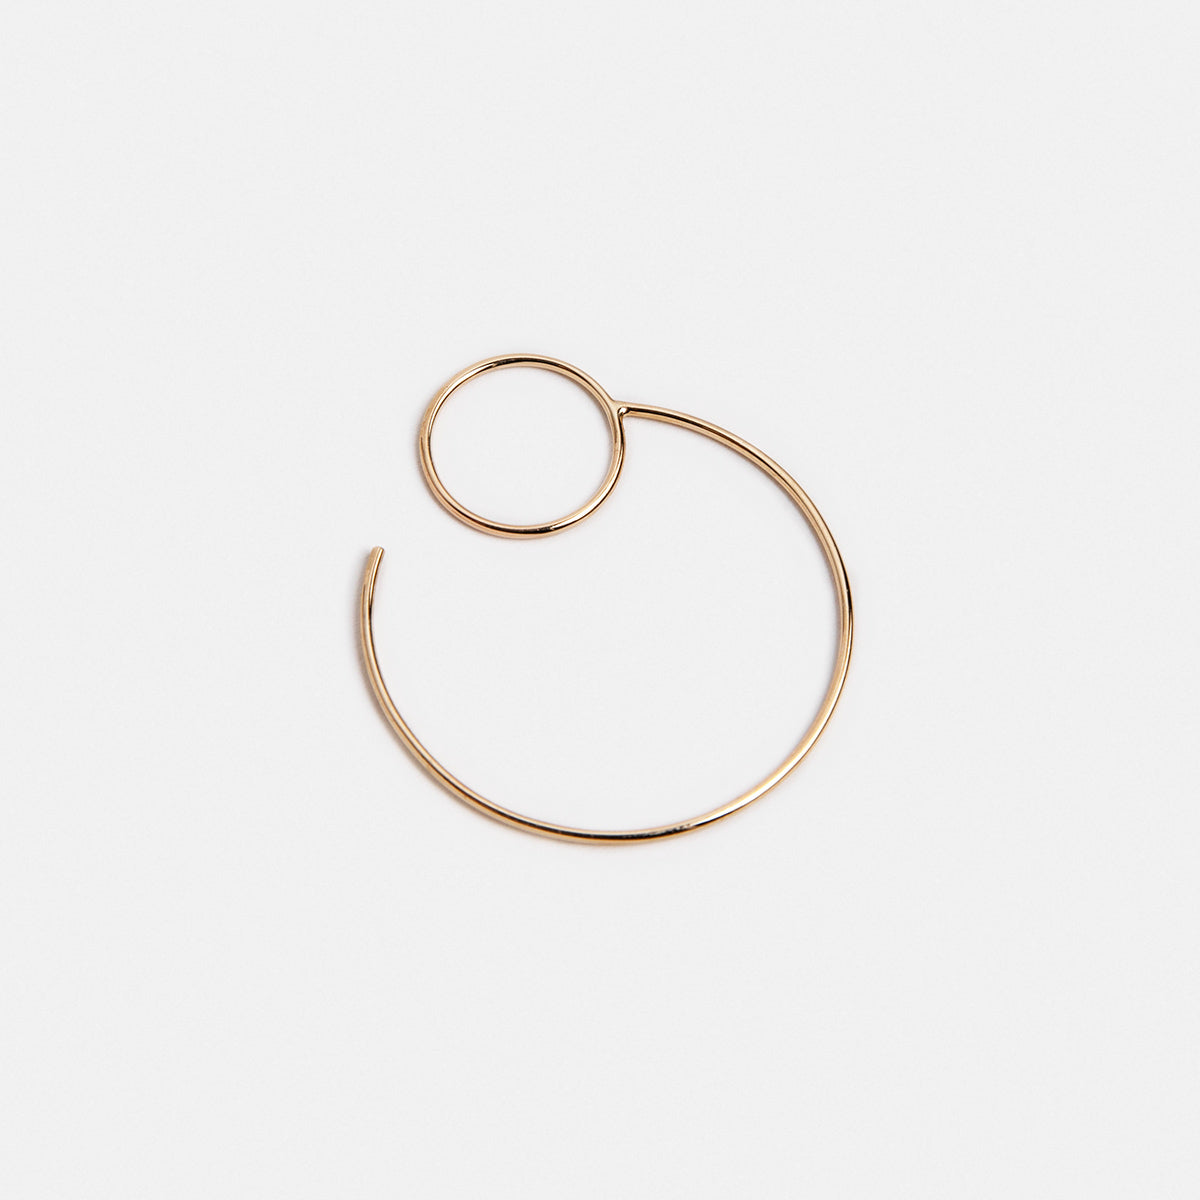 Saga Large Minimalist Hoop Earring in 14k Gold By SHW Fine Jewelry NYC